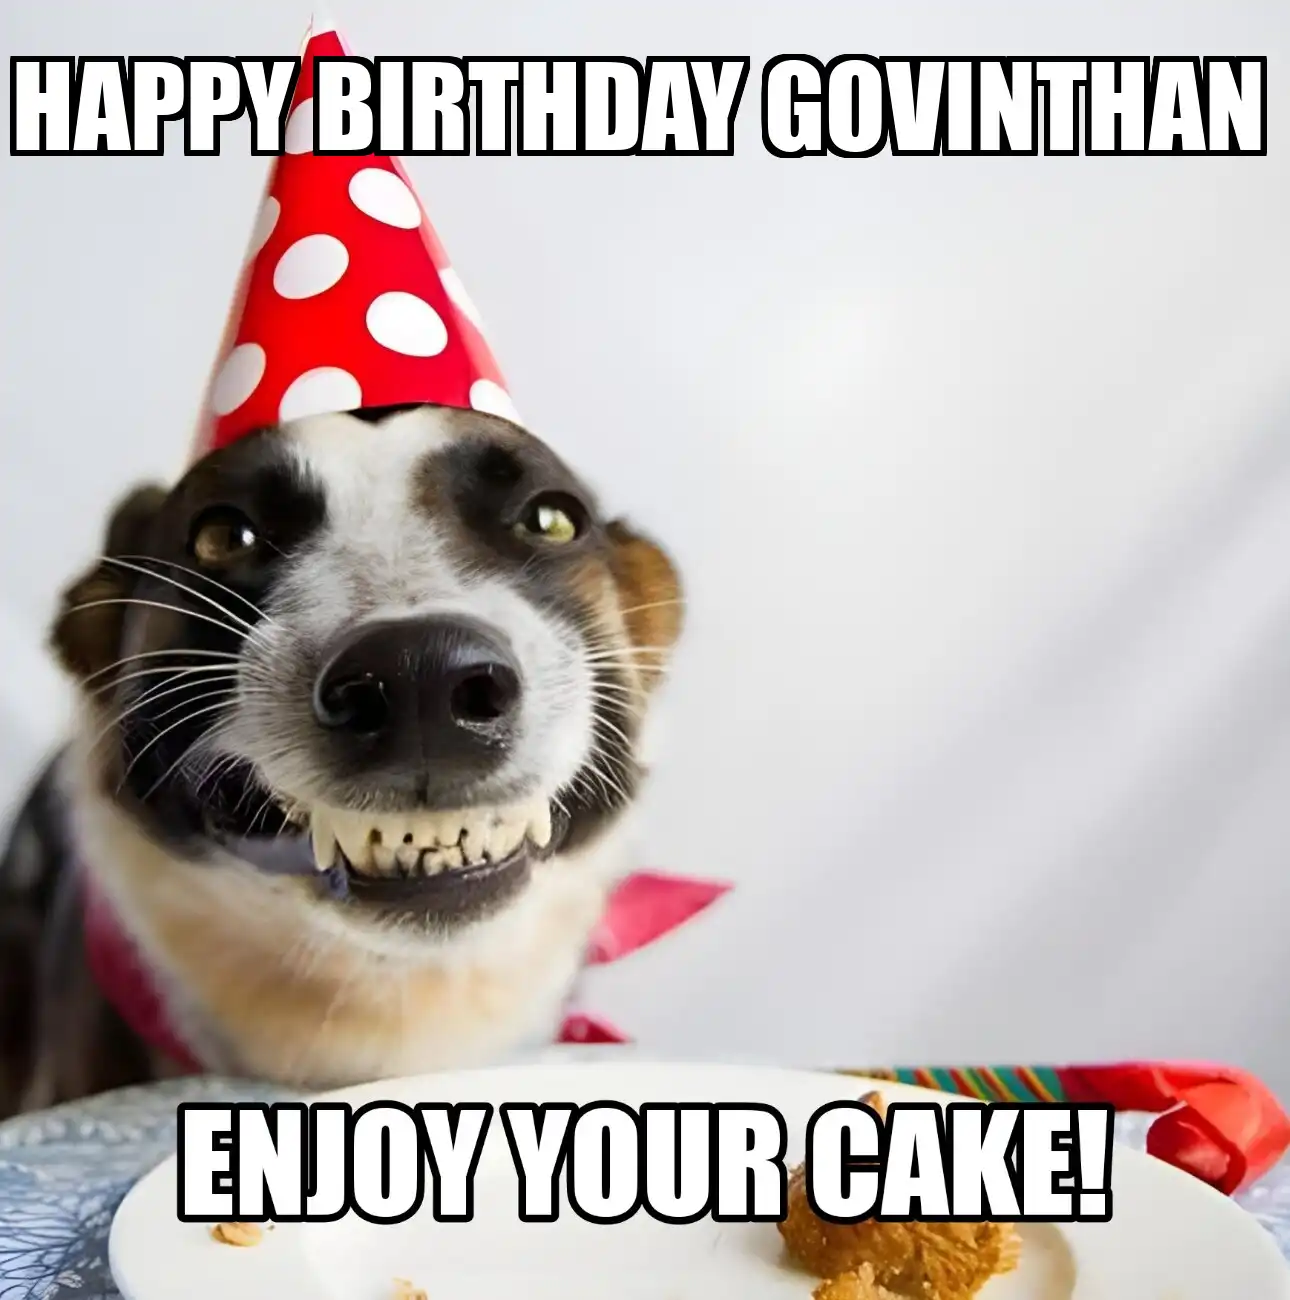 Happy Birthday Govinthan Enjoy Your Cake Dog Meme